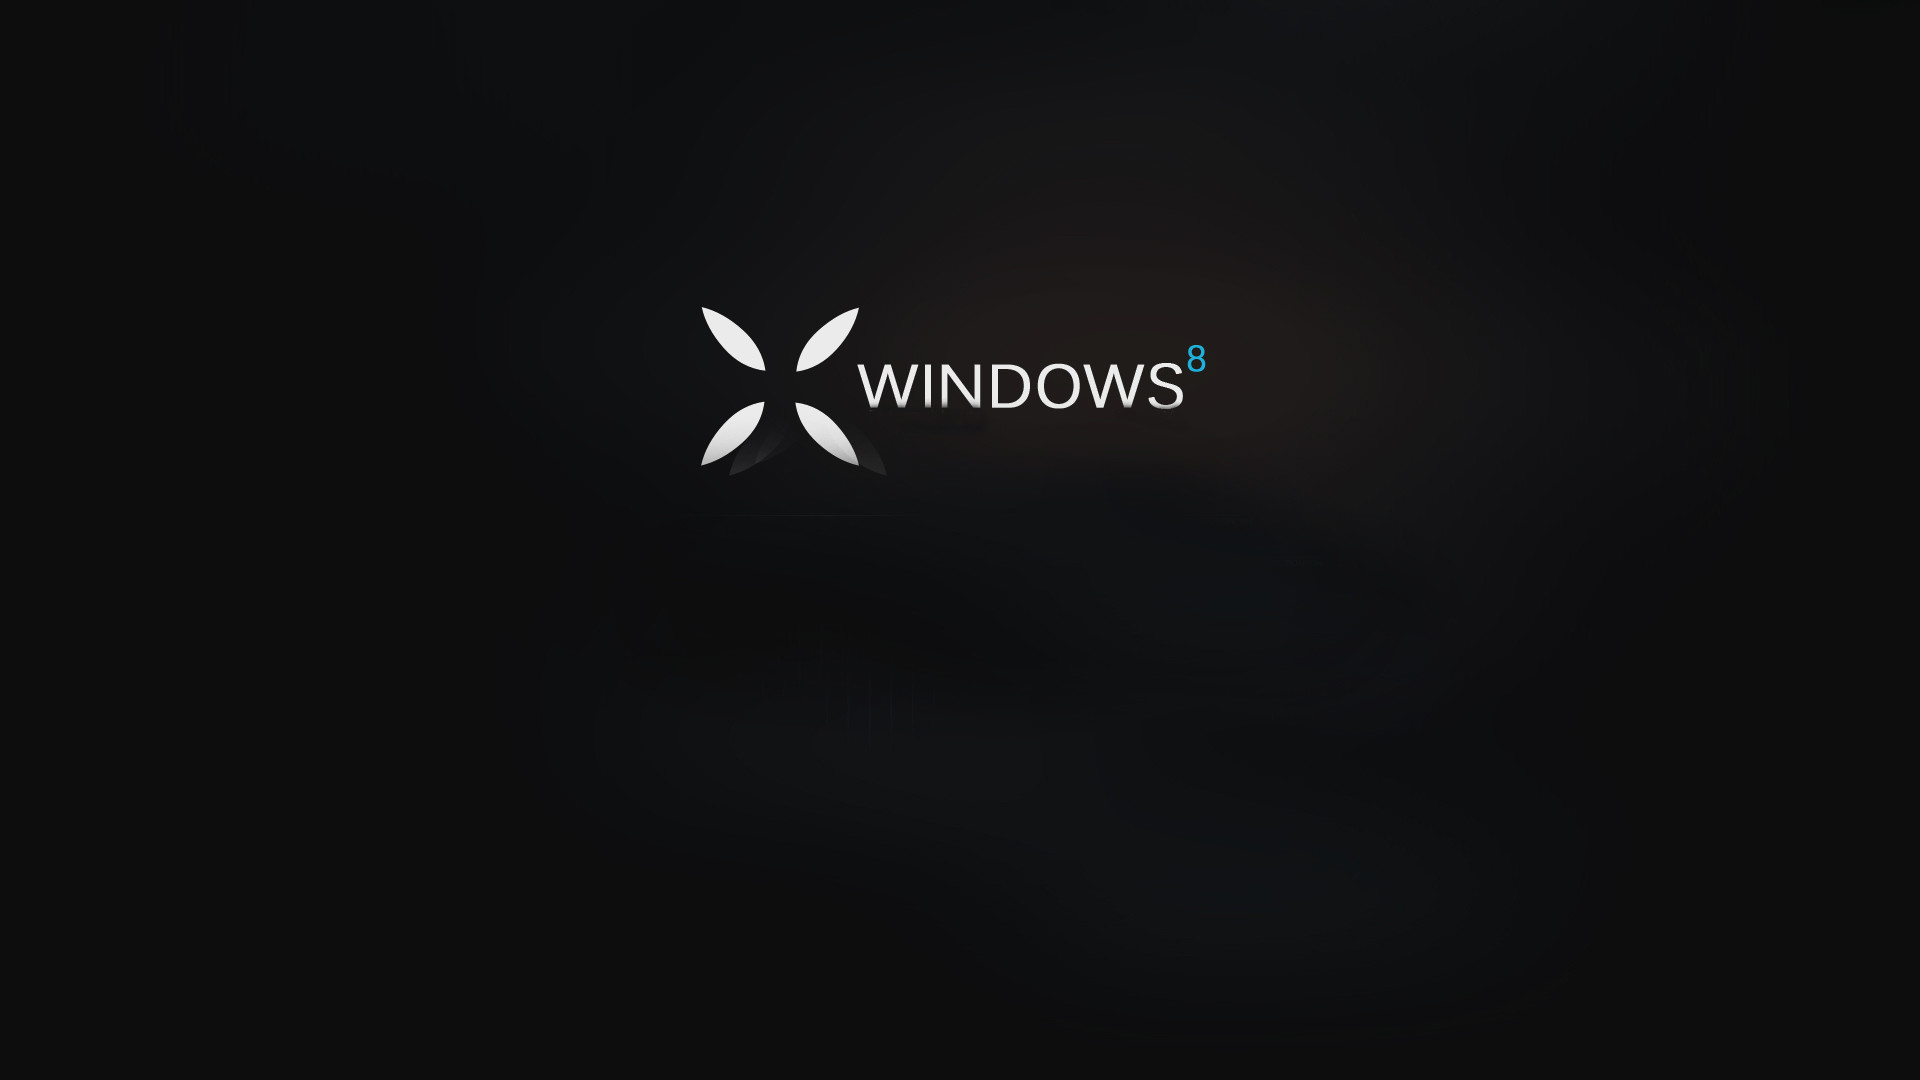 1920x1080 Windows 10 Desktop Is Black 27 Free Hd Wallpaper